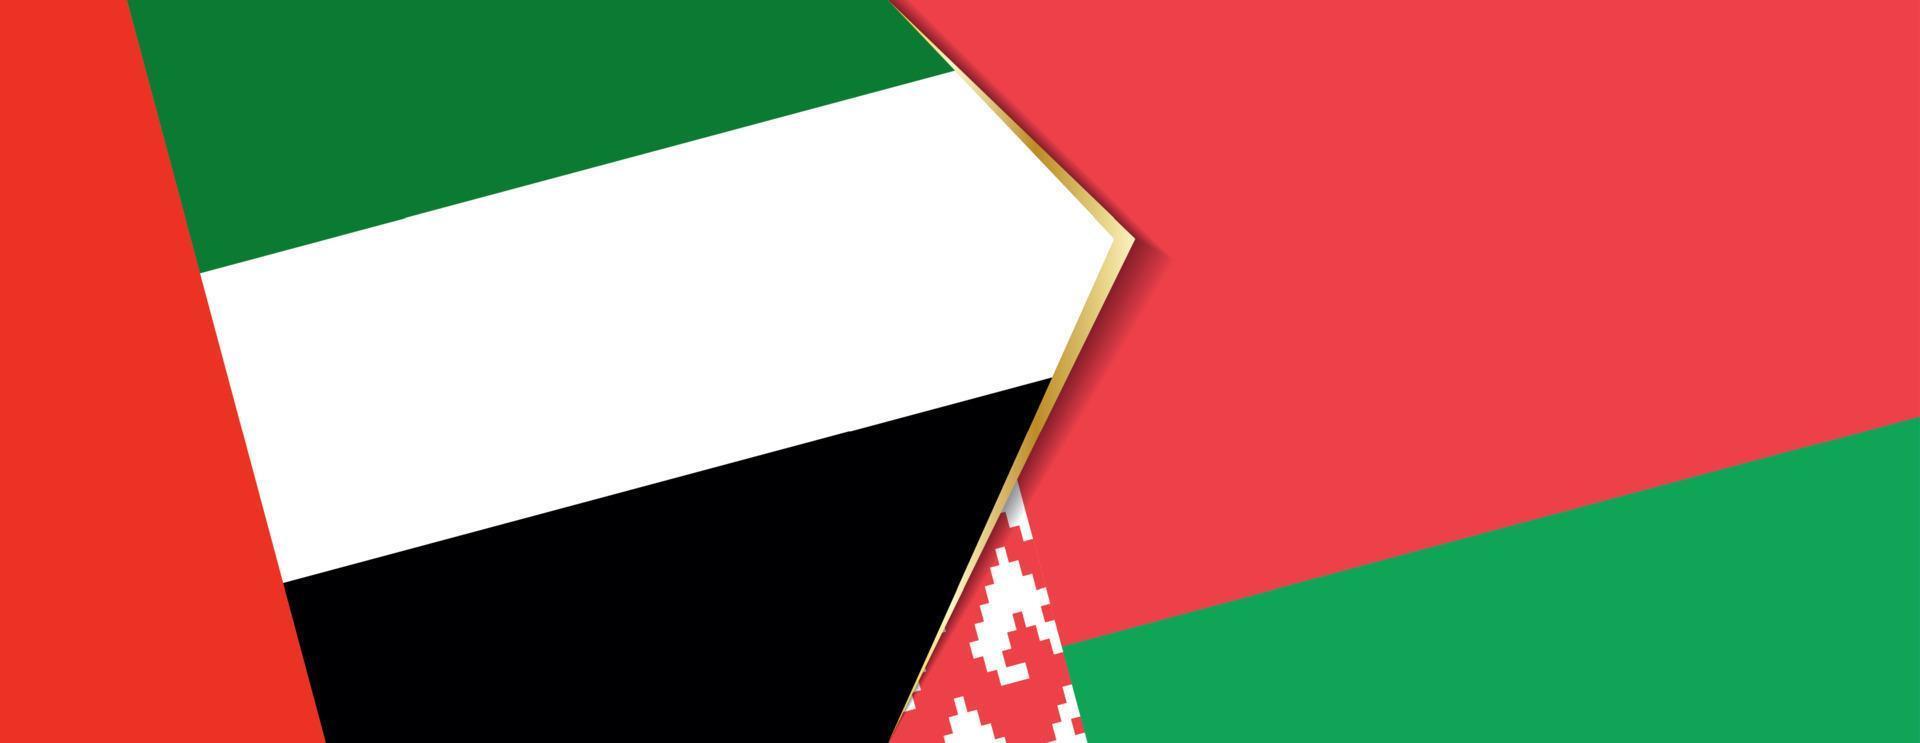 Verenigde Arabisch emiraten en Wit-Rusland vlaggen, twee vector vlaggen.